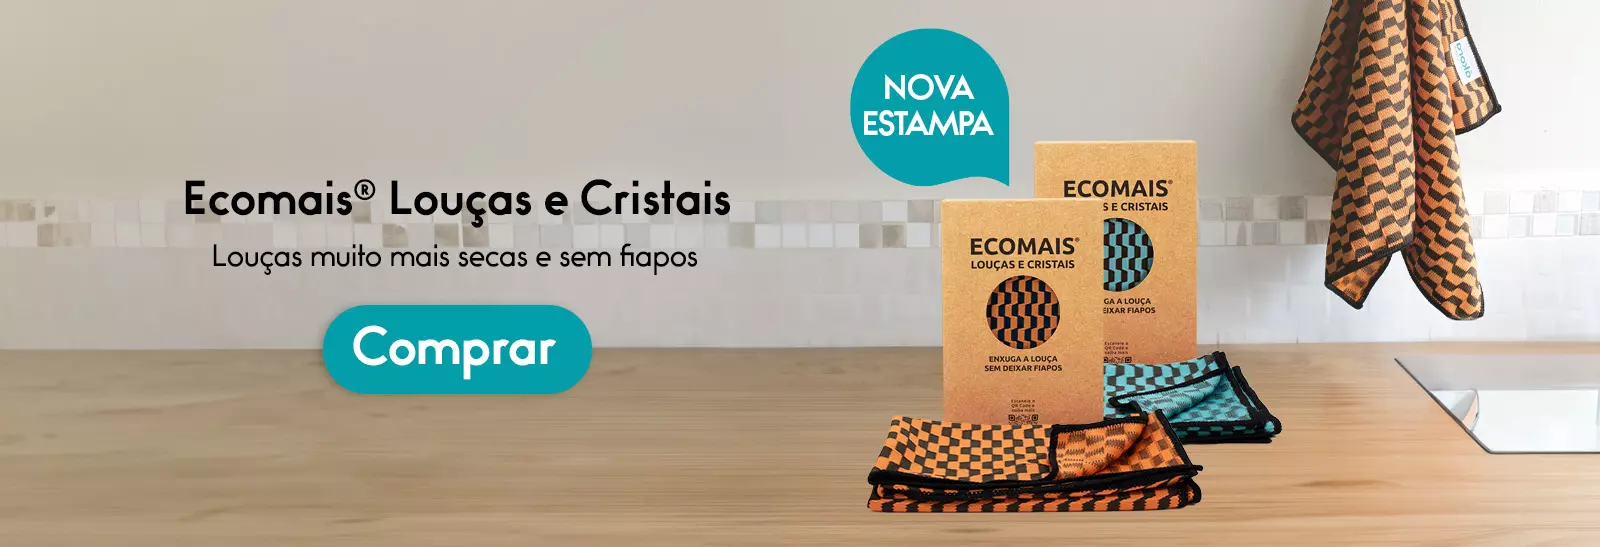 ecomais-pano-loucas-e-cristais-com-estampa-akora-brasil-2023-11-16-wide